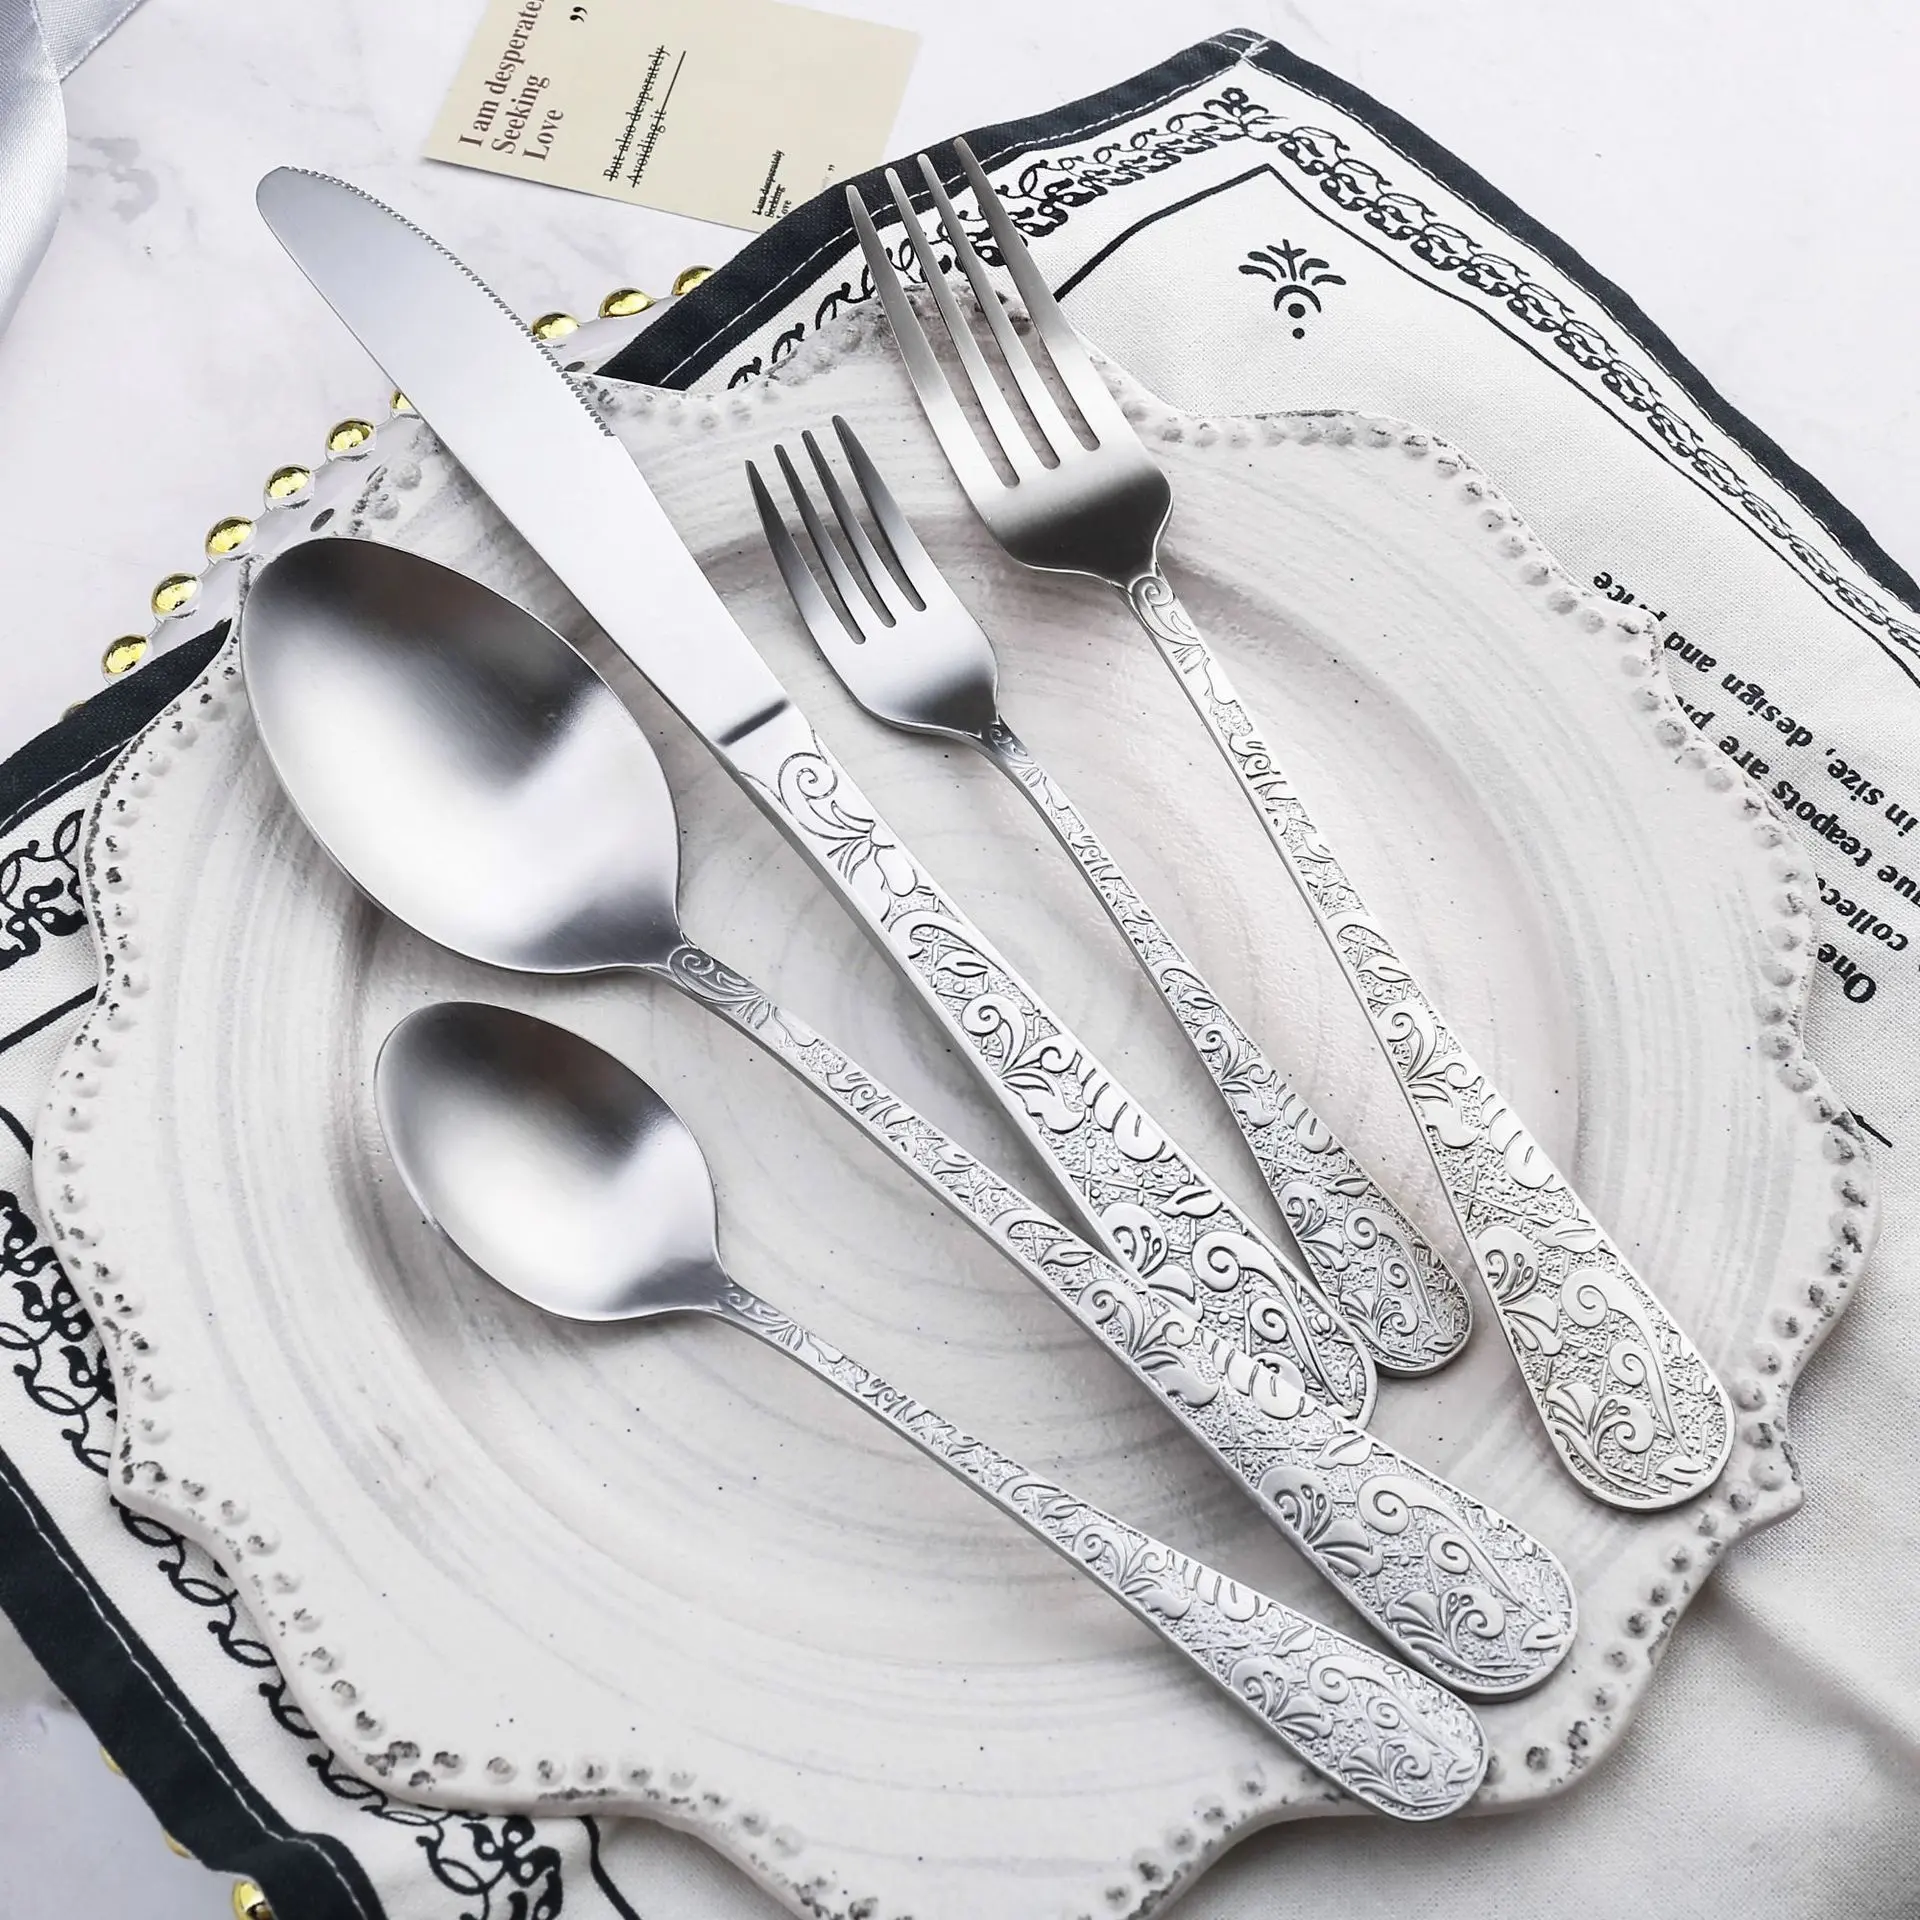 عالية الجودة الزفاف مطعم الباروك سكين شوكة ملعقة ماتي الفاخرة أدوات المائدة الذهبية الفولاذ المقاوم للصدأ أطباق أطقم هدايا